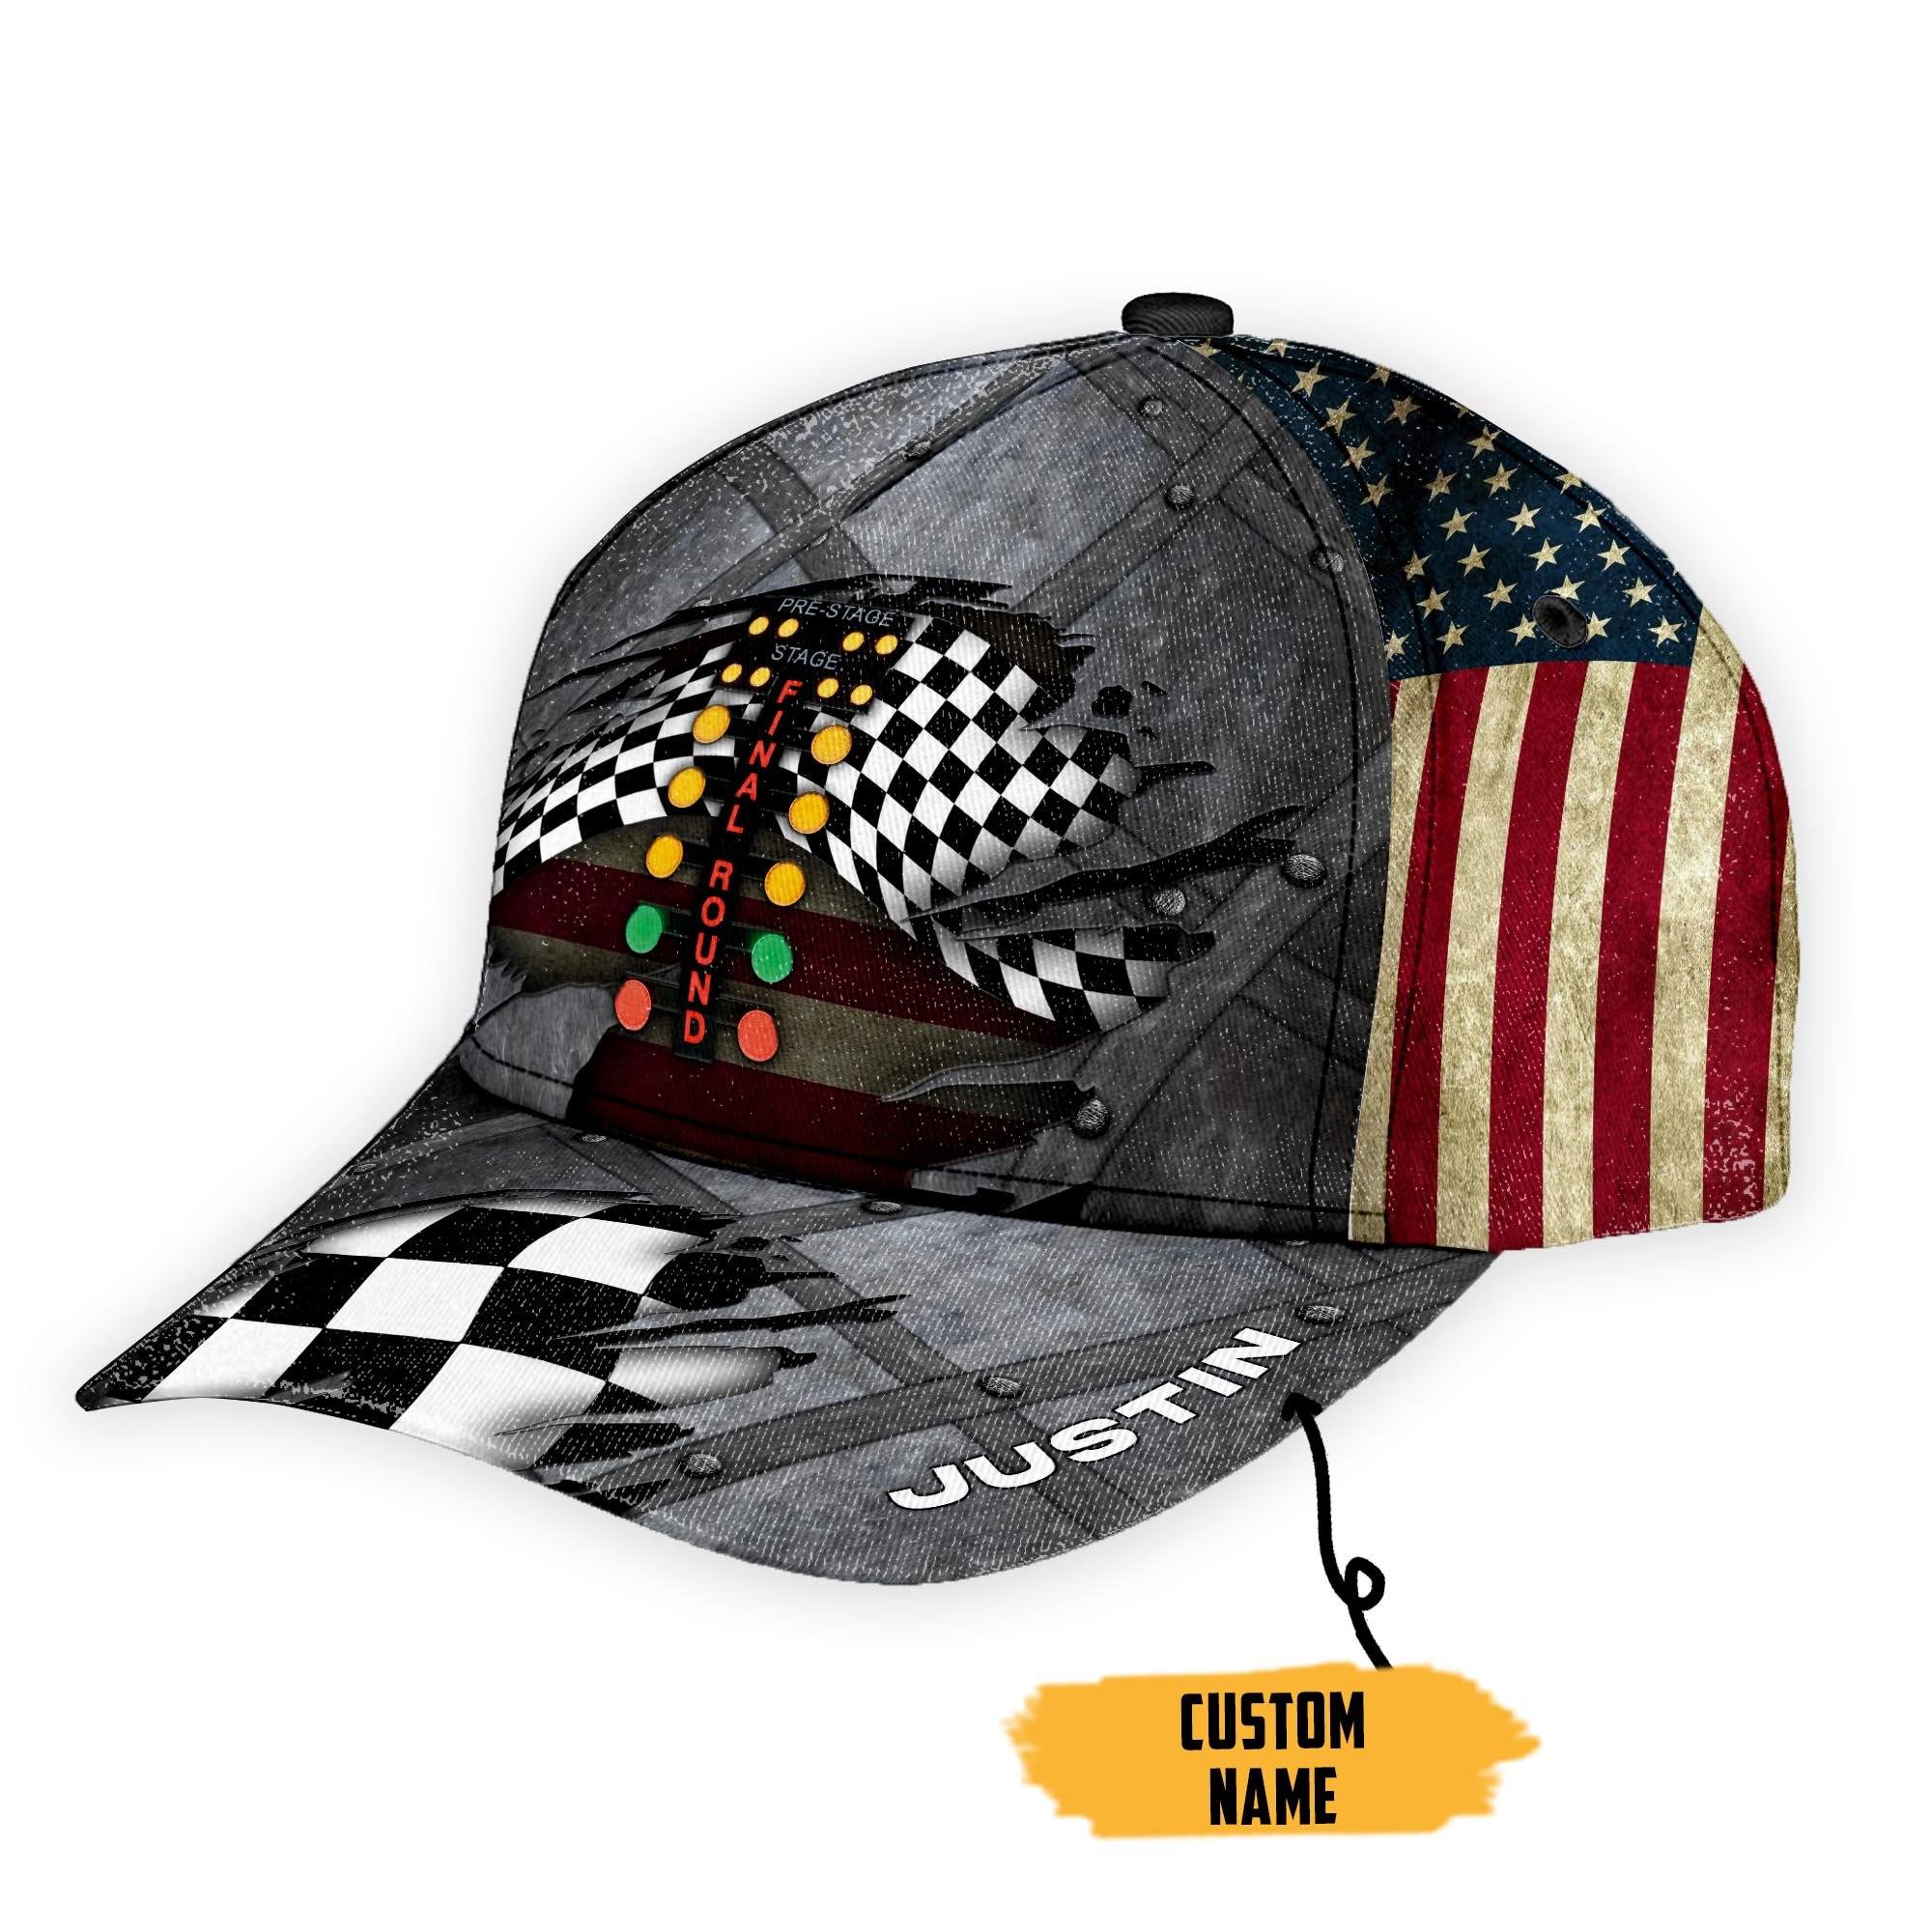 Drag Racing Custom Name Cap